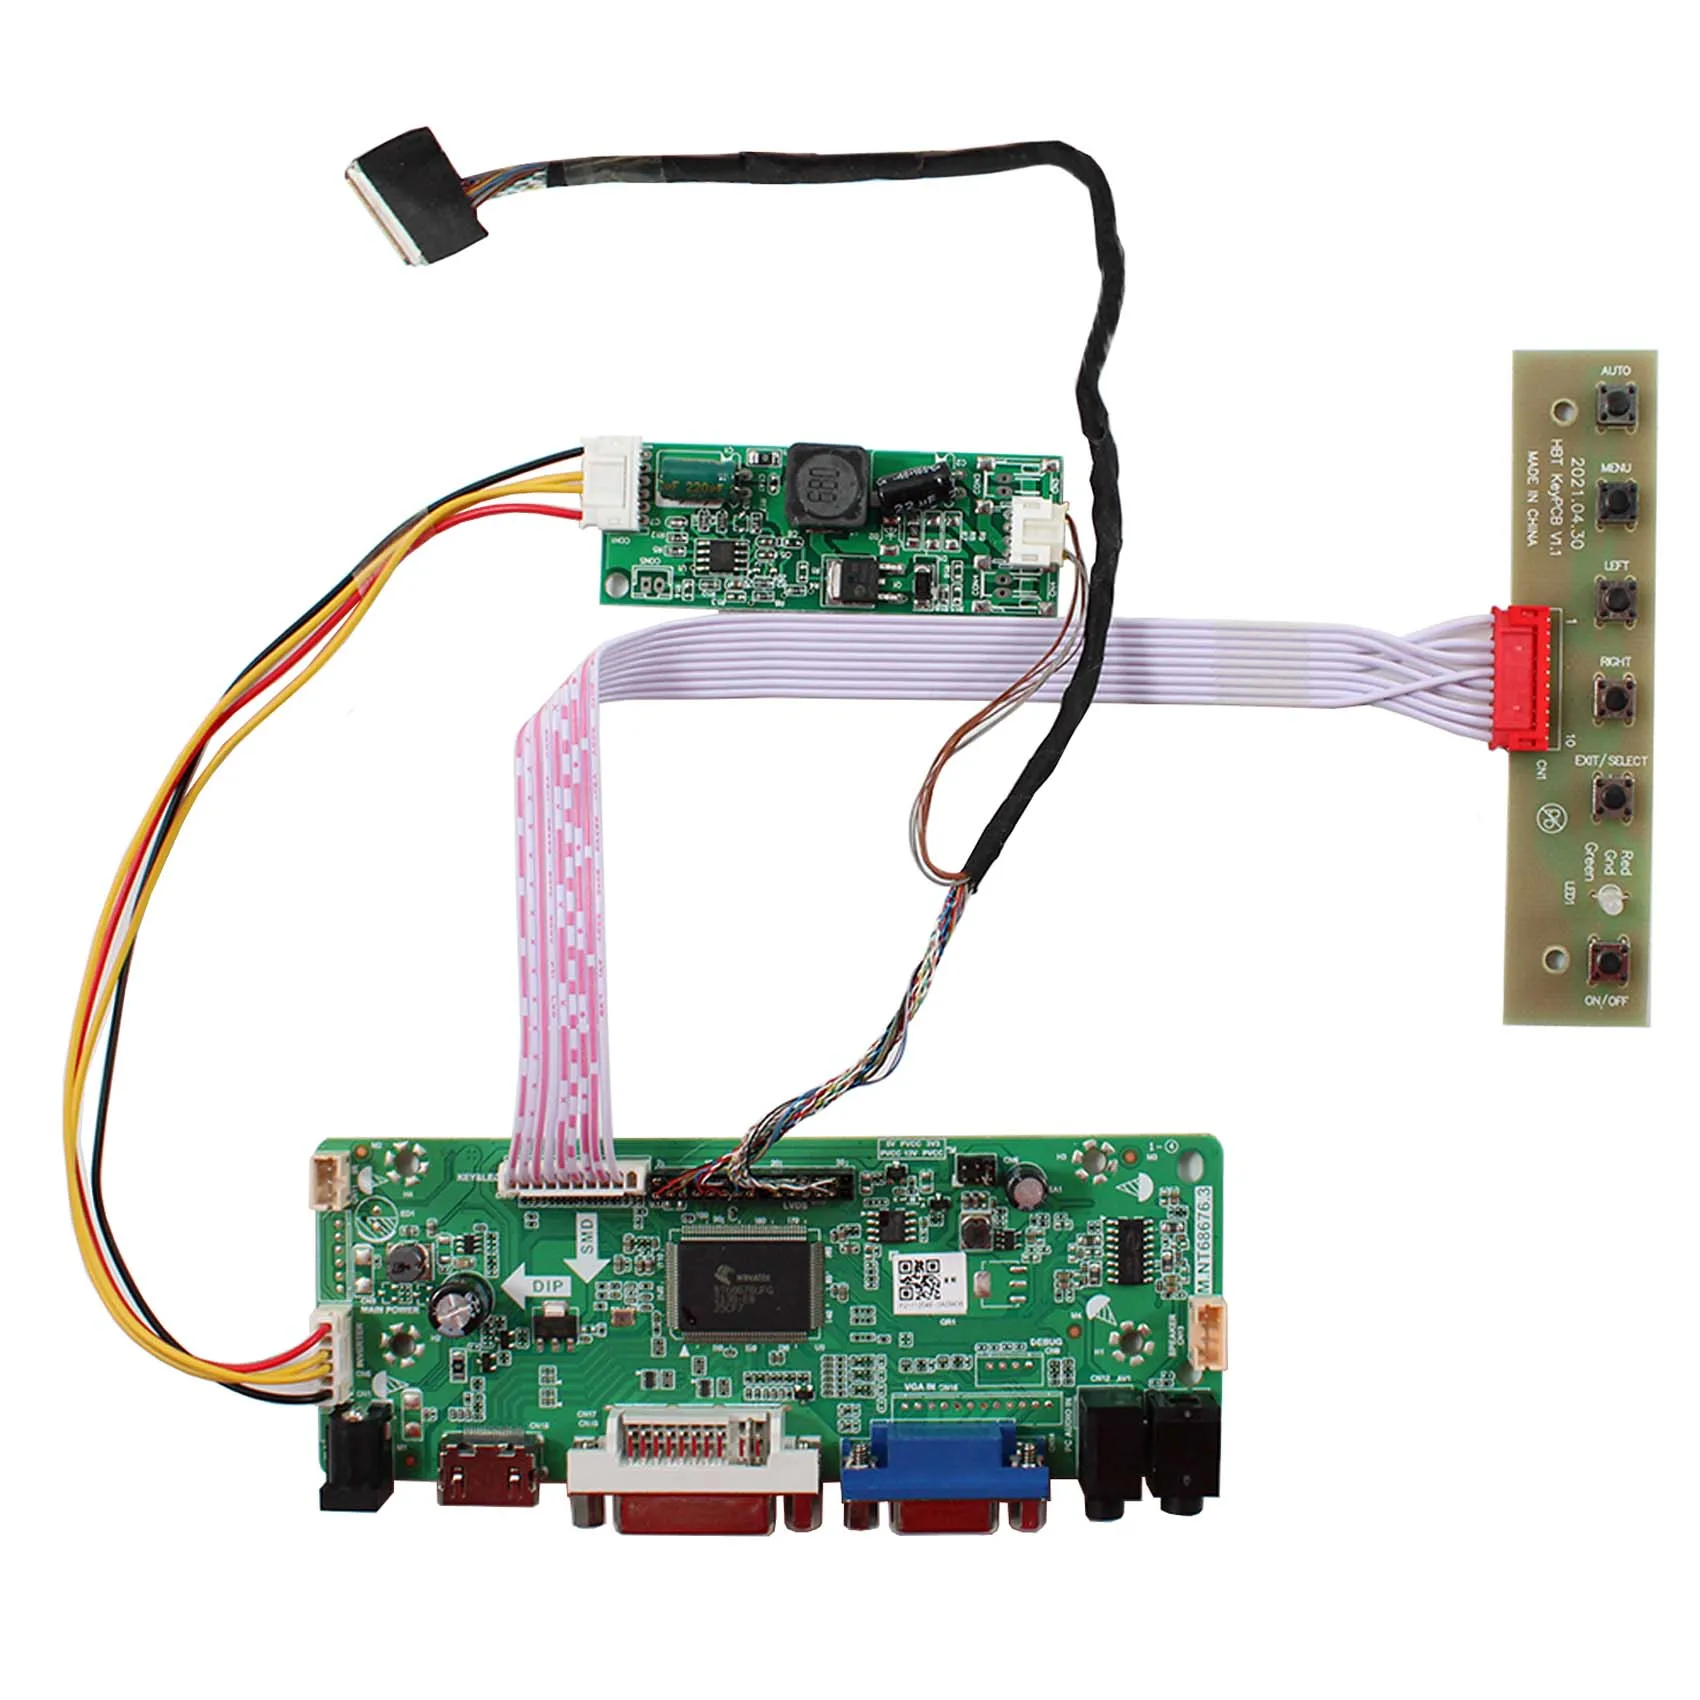 

HD-MI VGA VGI AUDIO LCD Controller Board work for 15.4inch LTN154BT02-001 LTN154BT03-001 LP154WP2 TLA1 N154C6-L01 B154PW04 V0